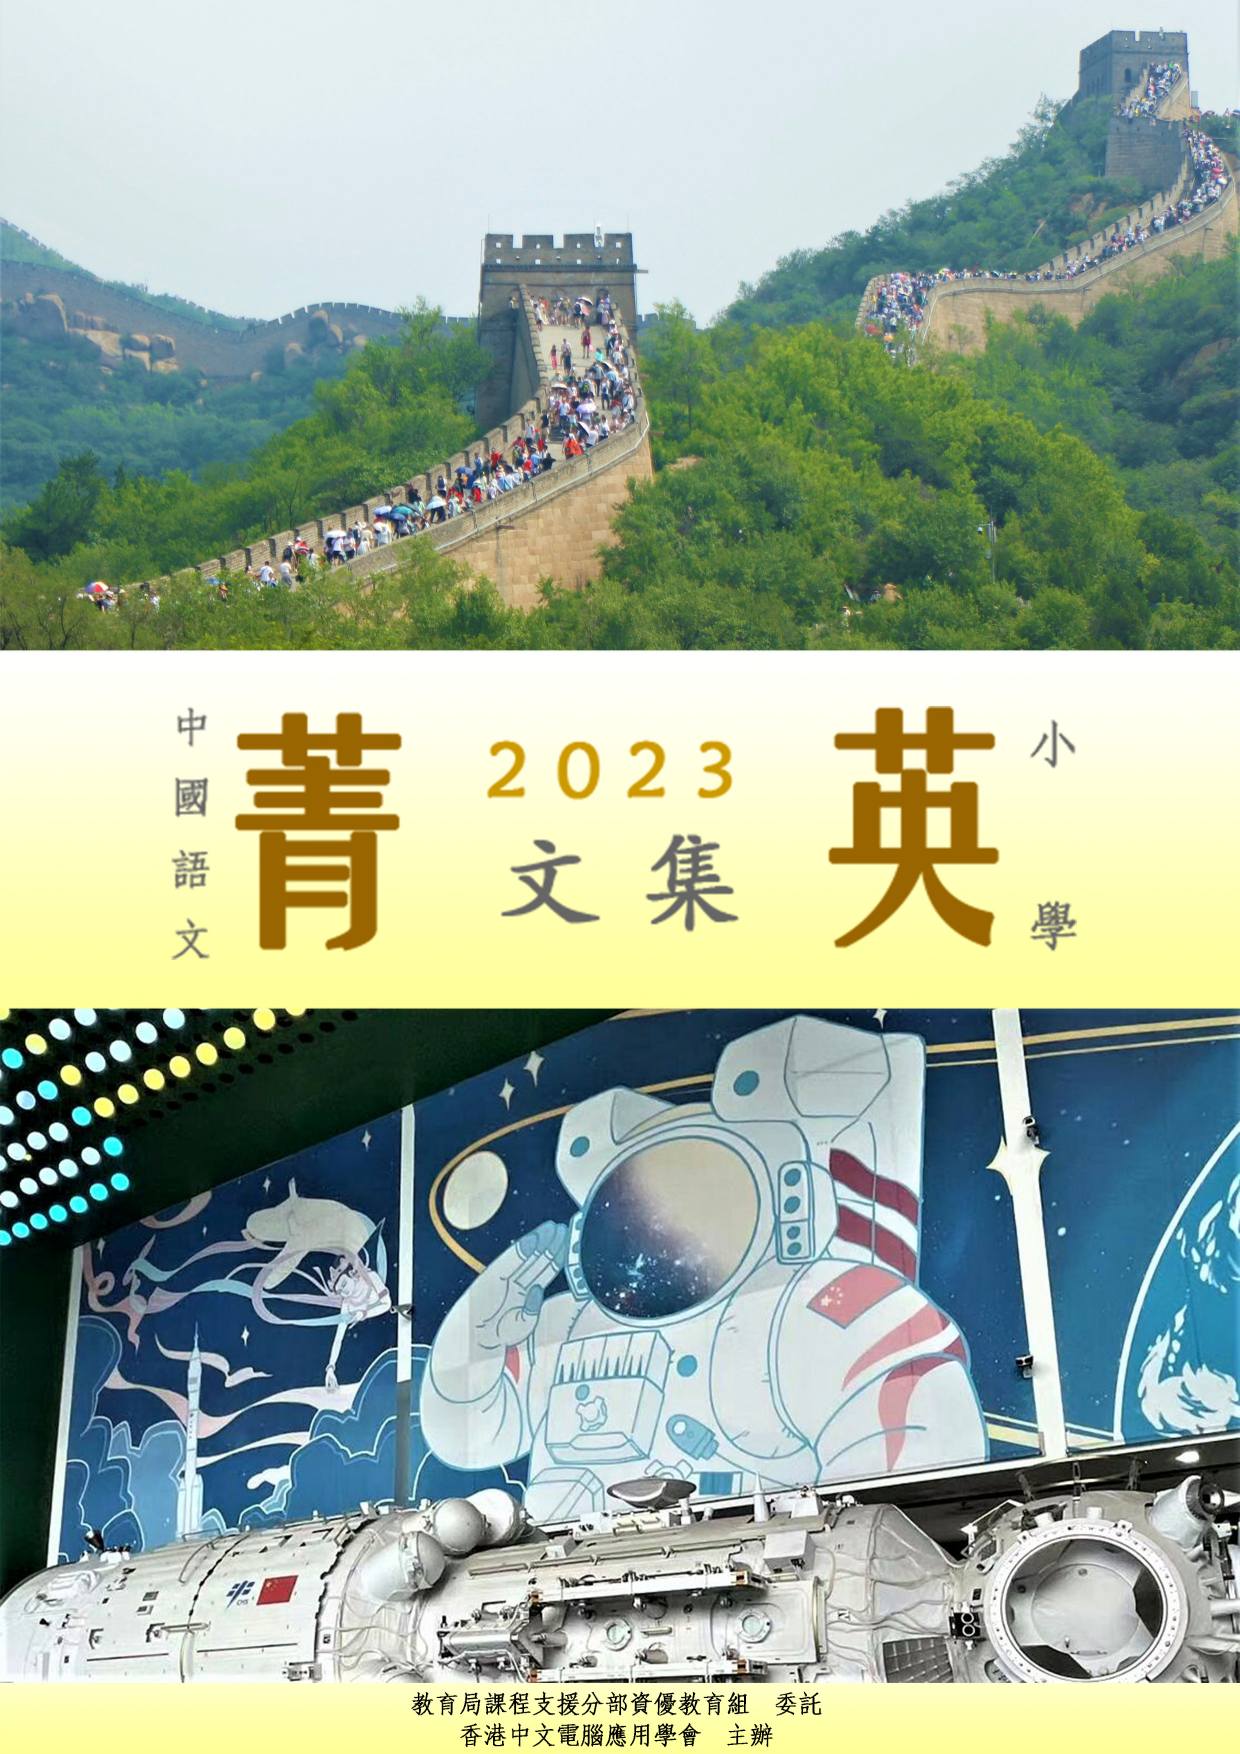 中國語文菁英計劃2022/23菁英文集(小學組)